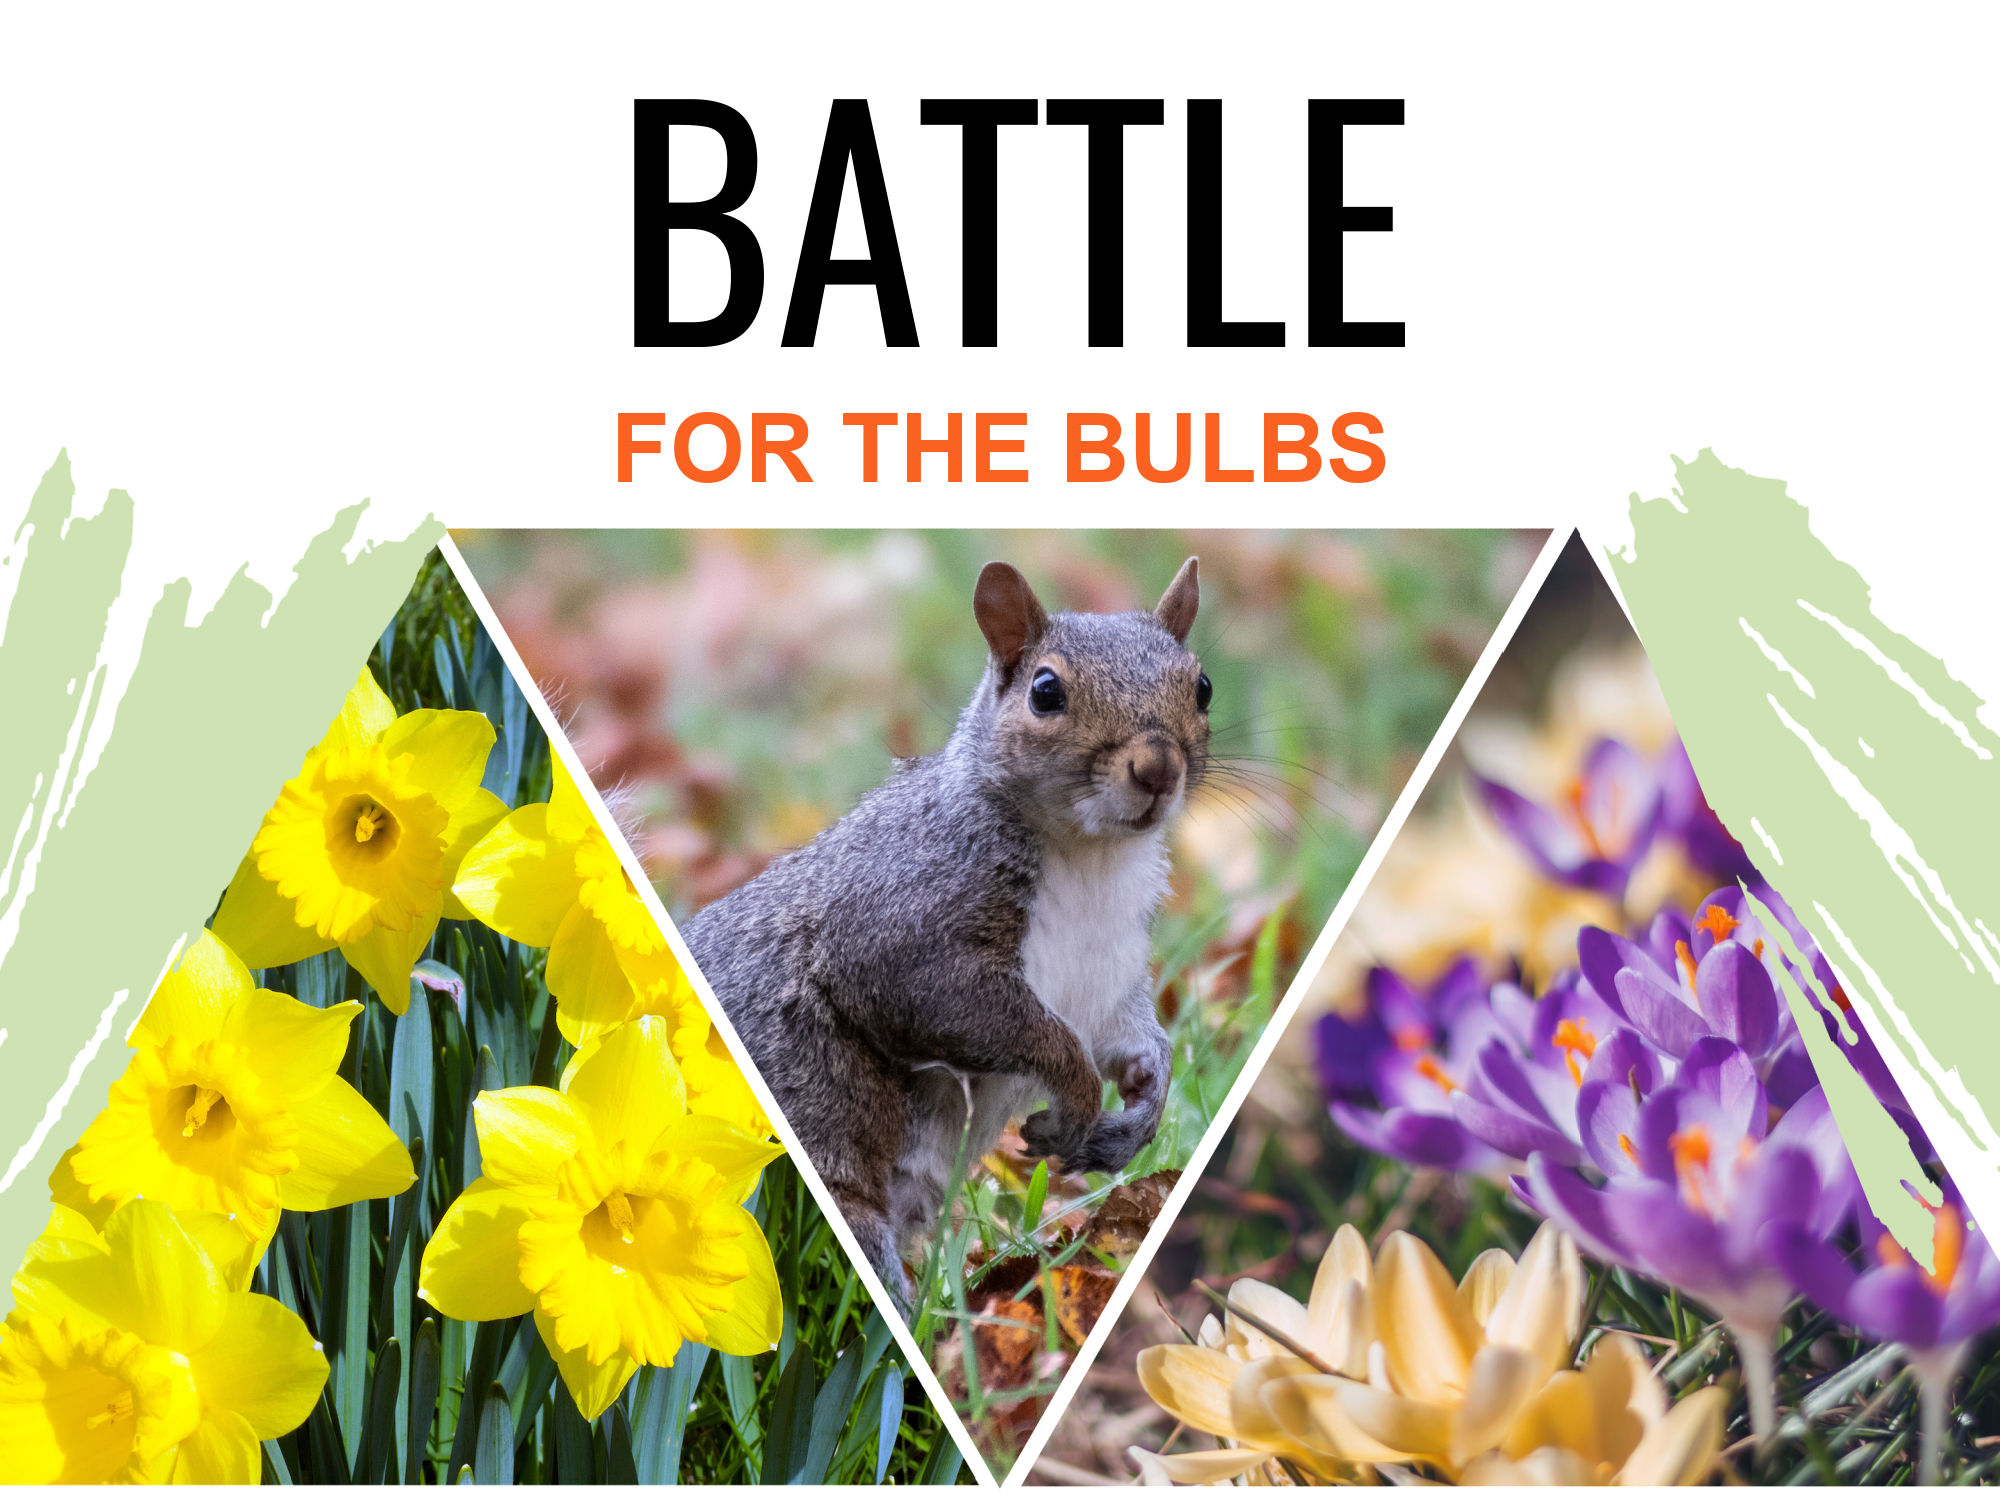 Battle for the Bulbs